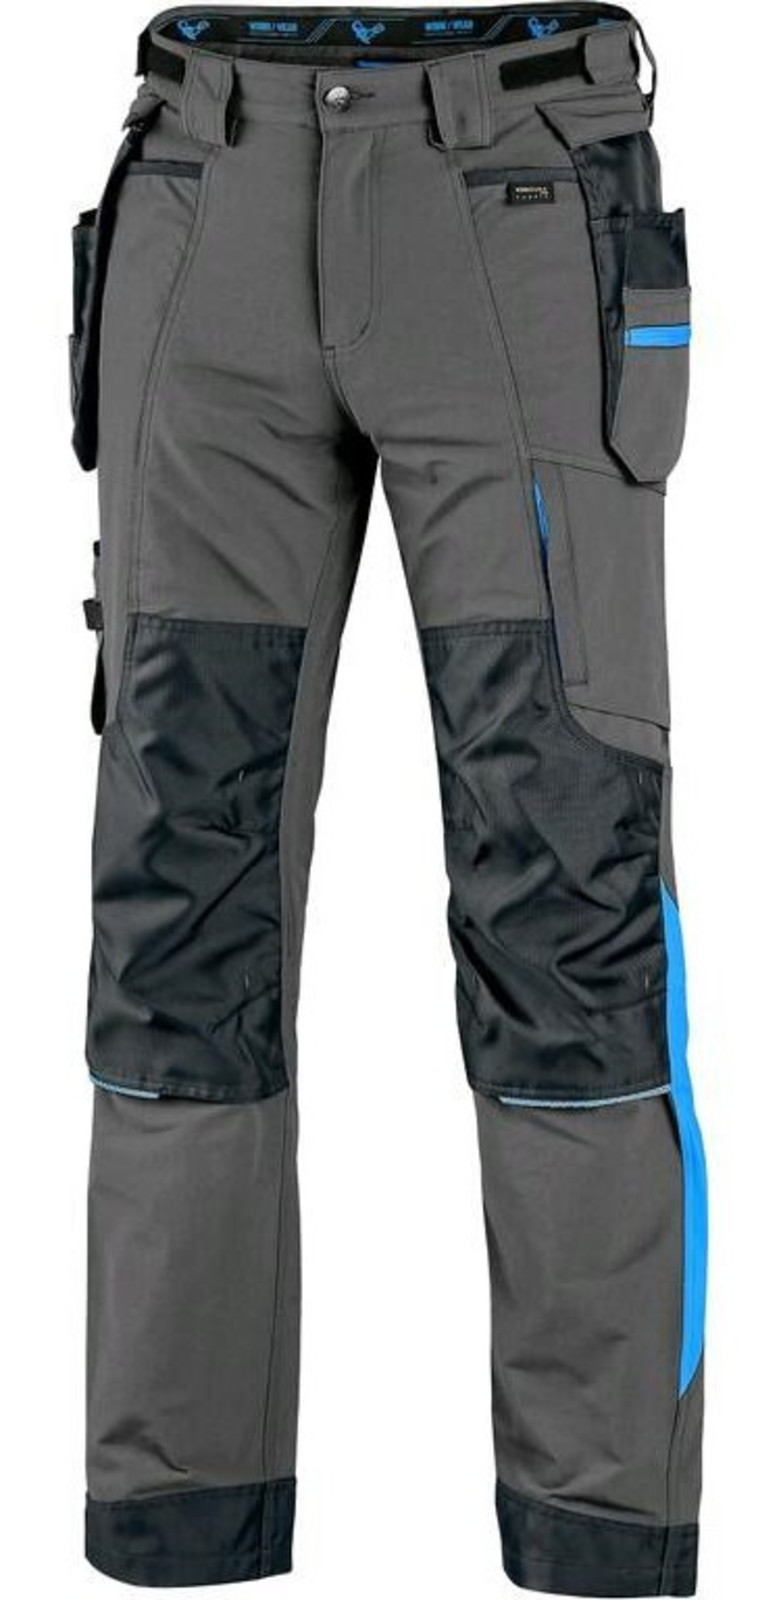 Montérkové nohavice CXS Naos s reflexnými doplnkami - veľkosť: 46, farba: sivá/modrá